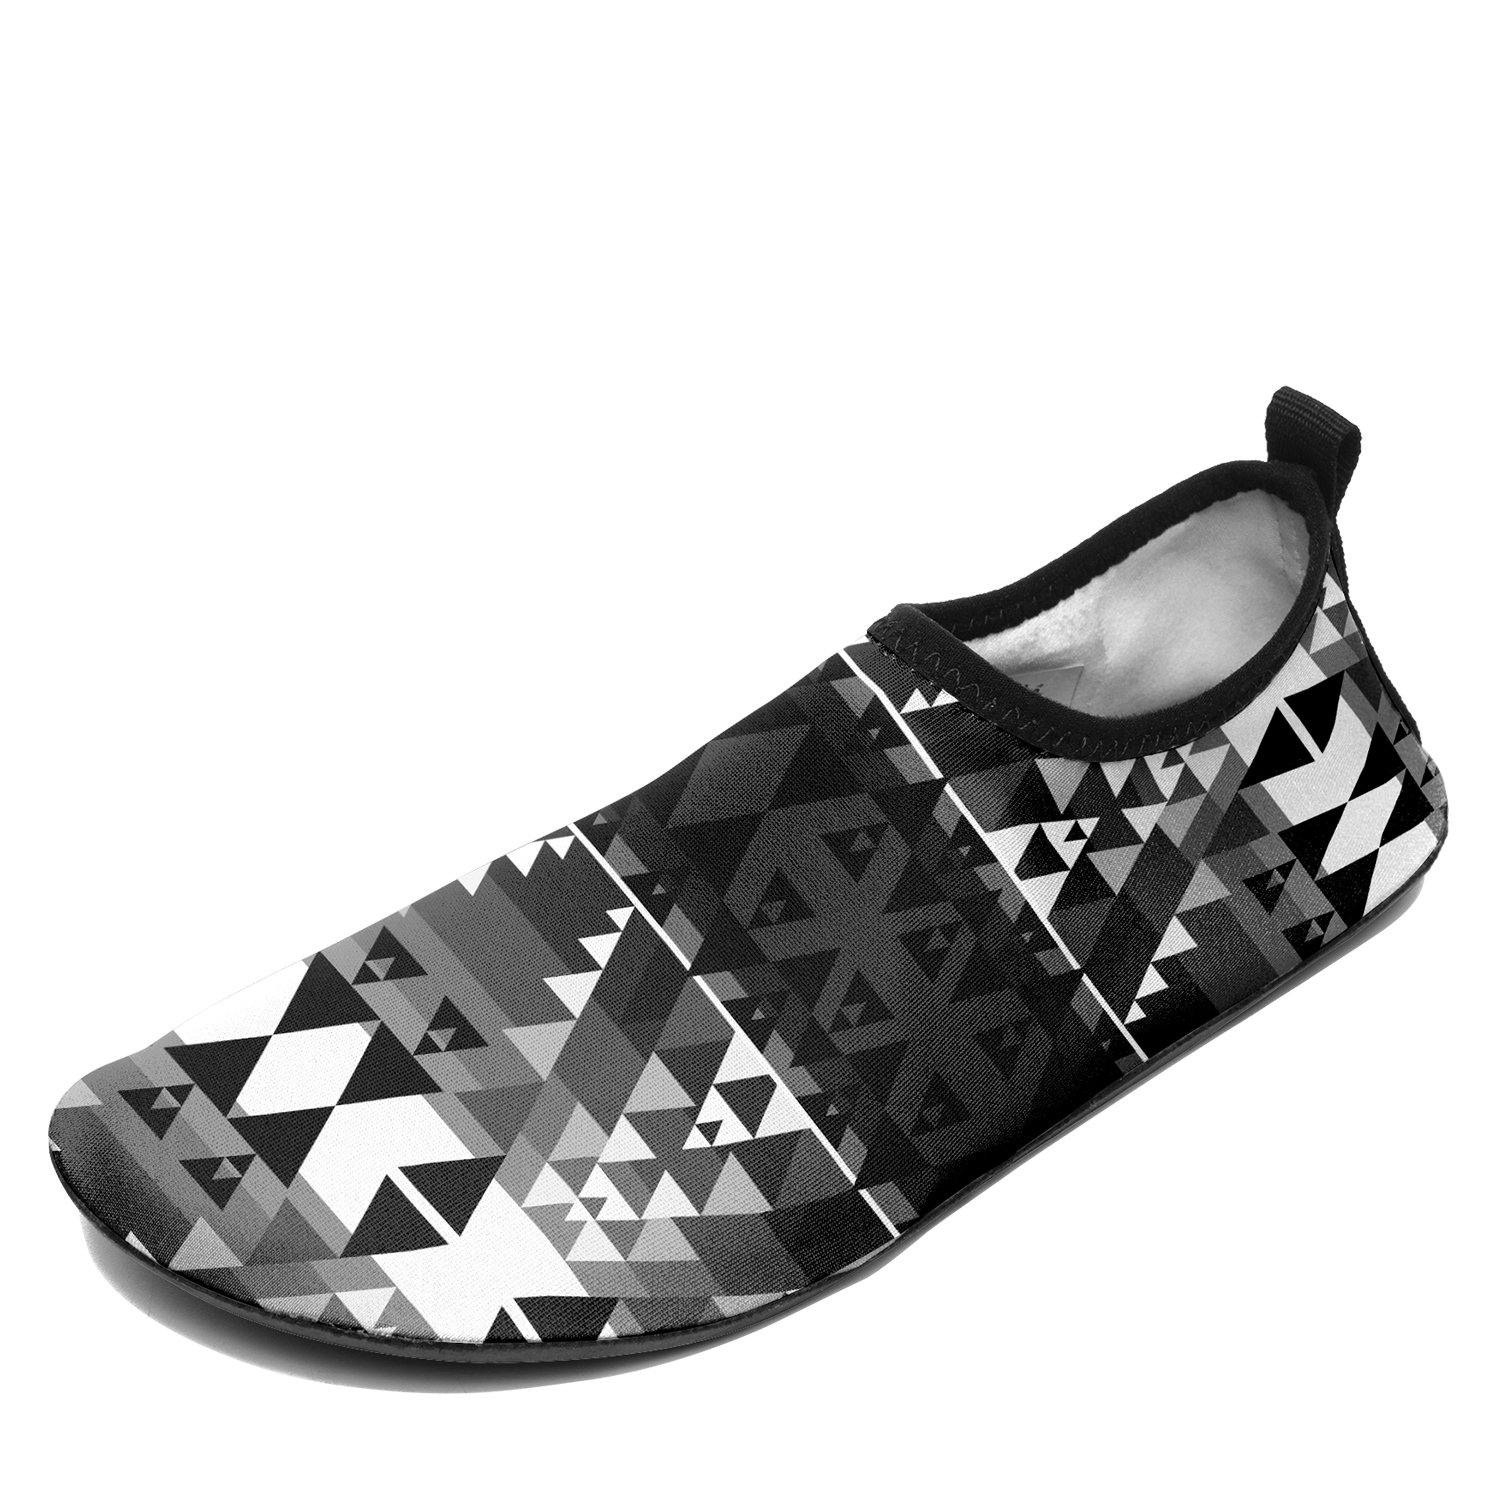 Writing on Stone Black and White Sockamoccs Slip On Shoes 49 Dzine 